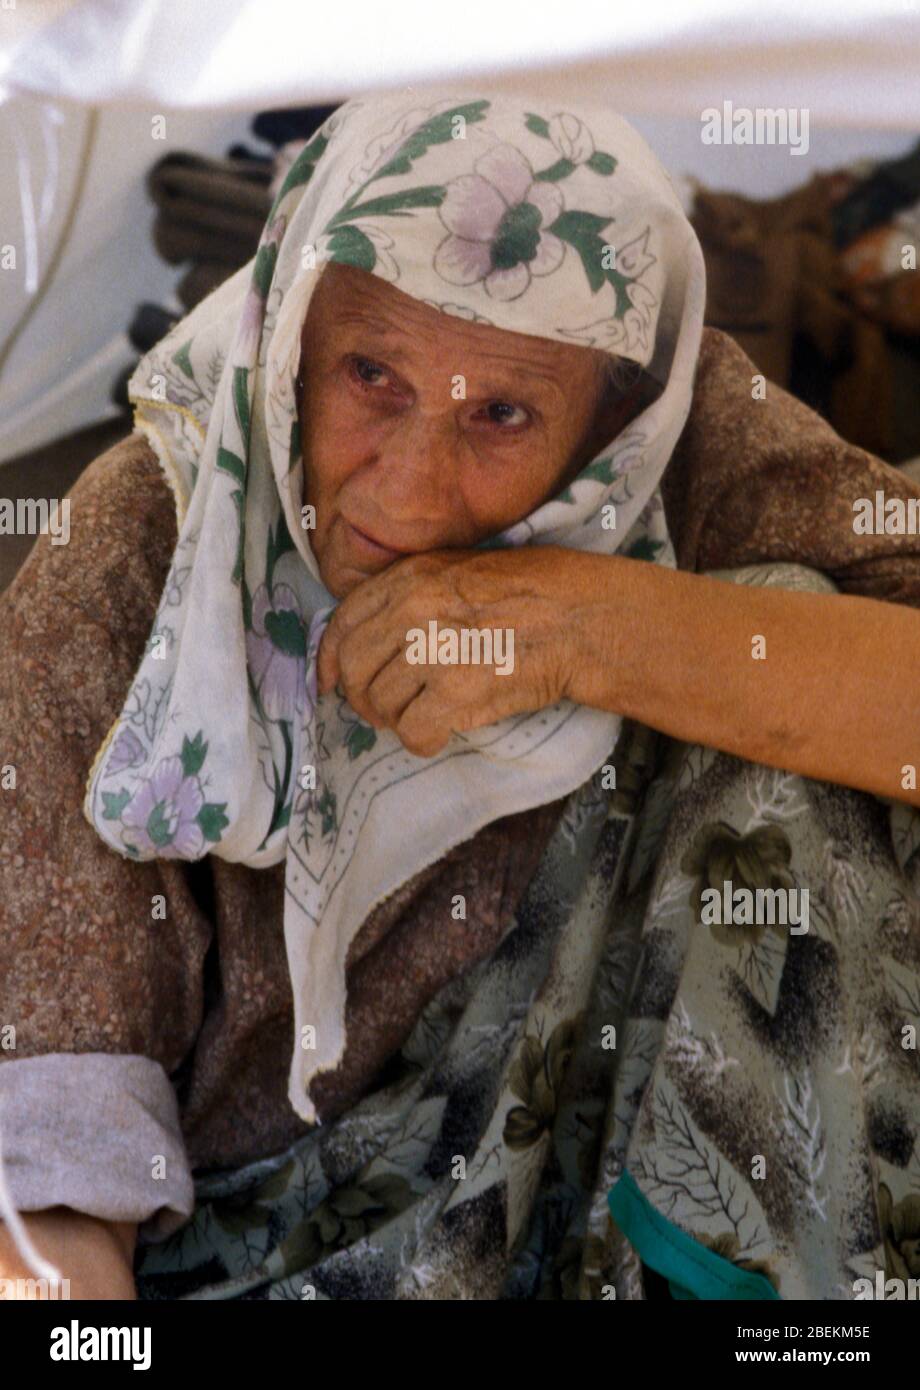 1995 - älterer bosnischer Flüchtling auf dem Flugplatz Tuzla der Vereinten Nationen vorübergehendes Flüchtlingslager für bosnische Muslime, die vor dem Massaker von Srebrenica während des Bosnienkrieges fliehen Stockfoto